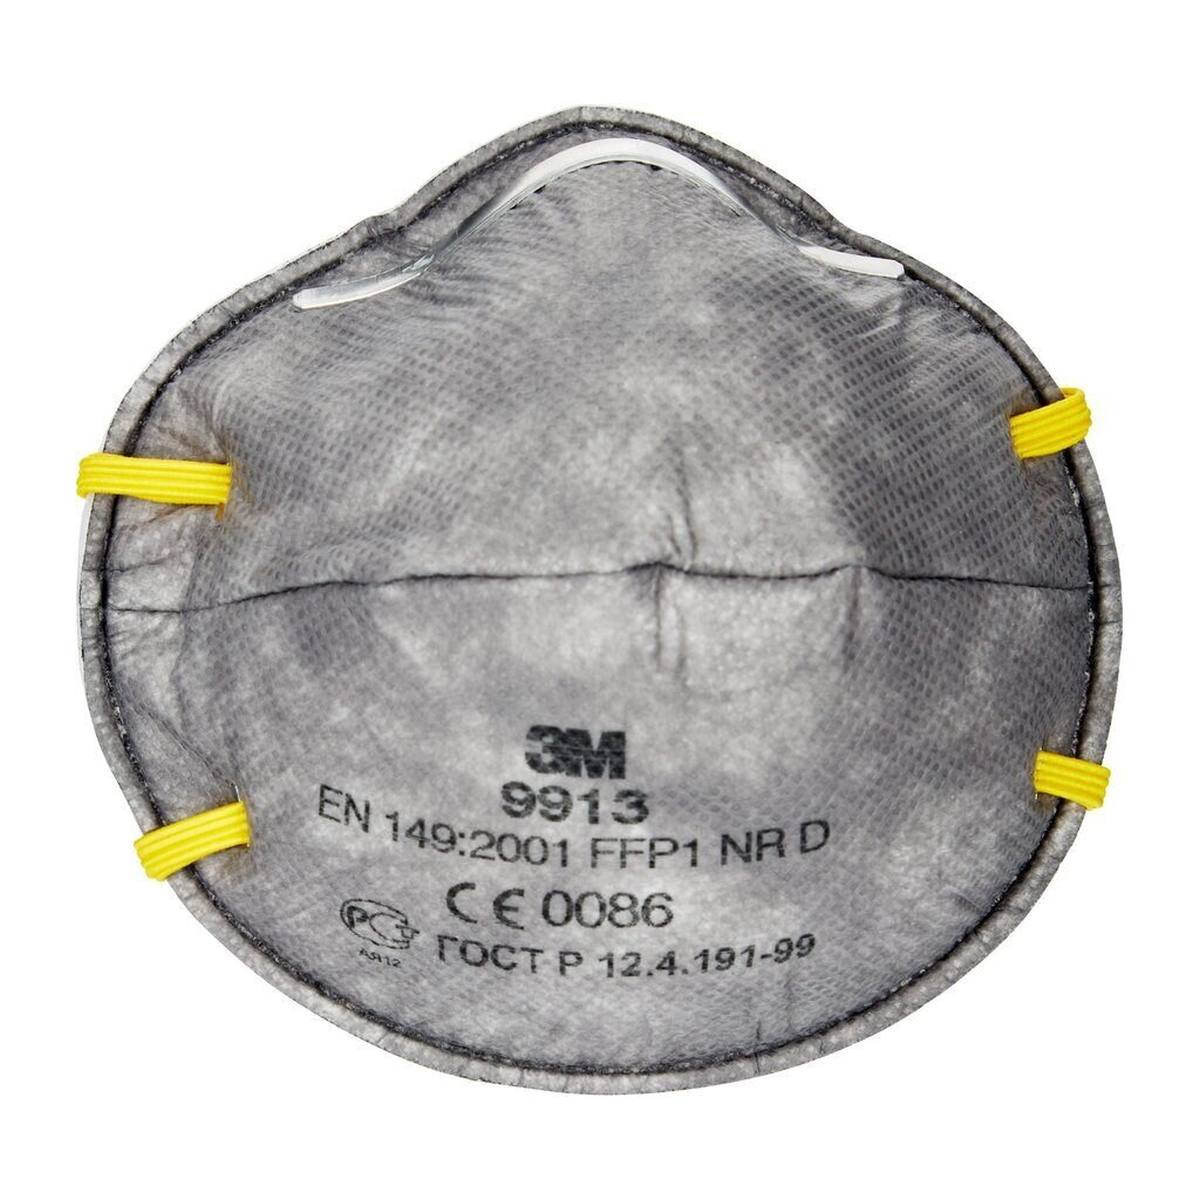 3M 9913 Maschera di protezione dagli odori FFP1, fino a 4 volte il valore limite e contro gli odori organici inferiori al valore limite